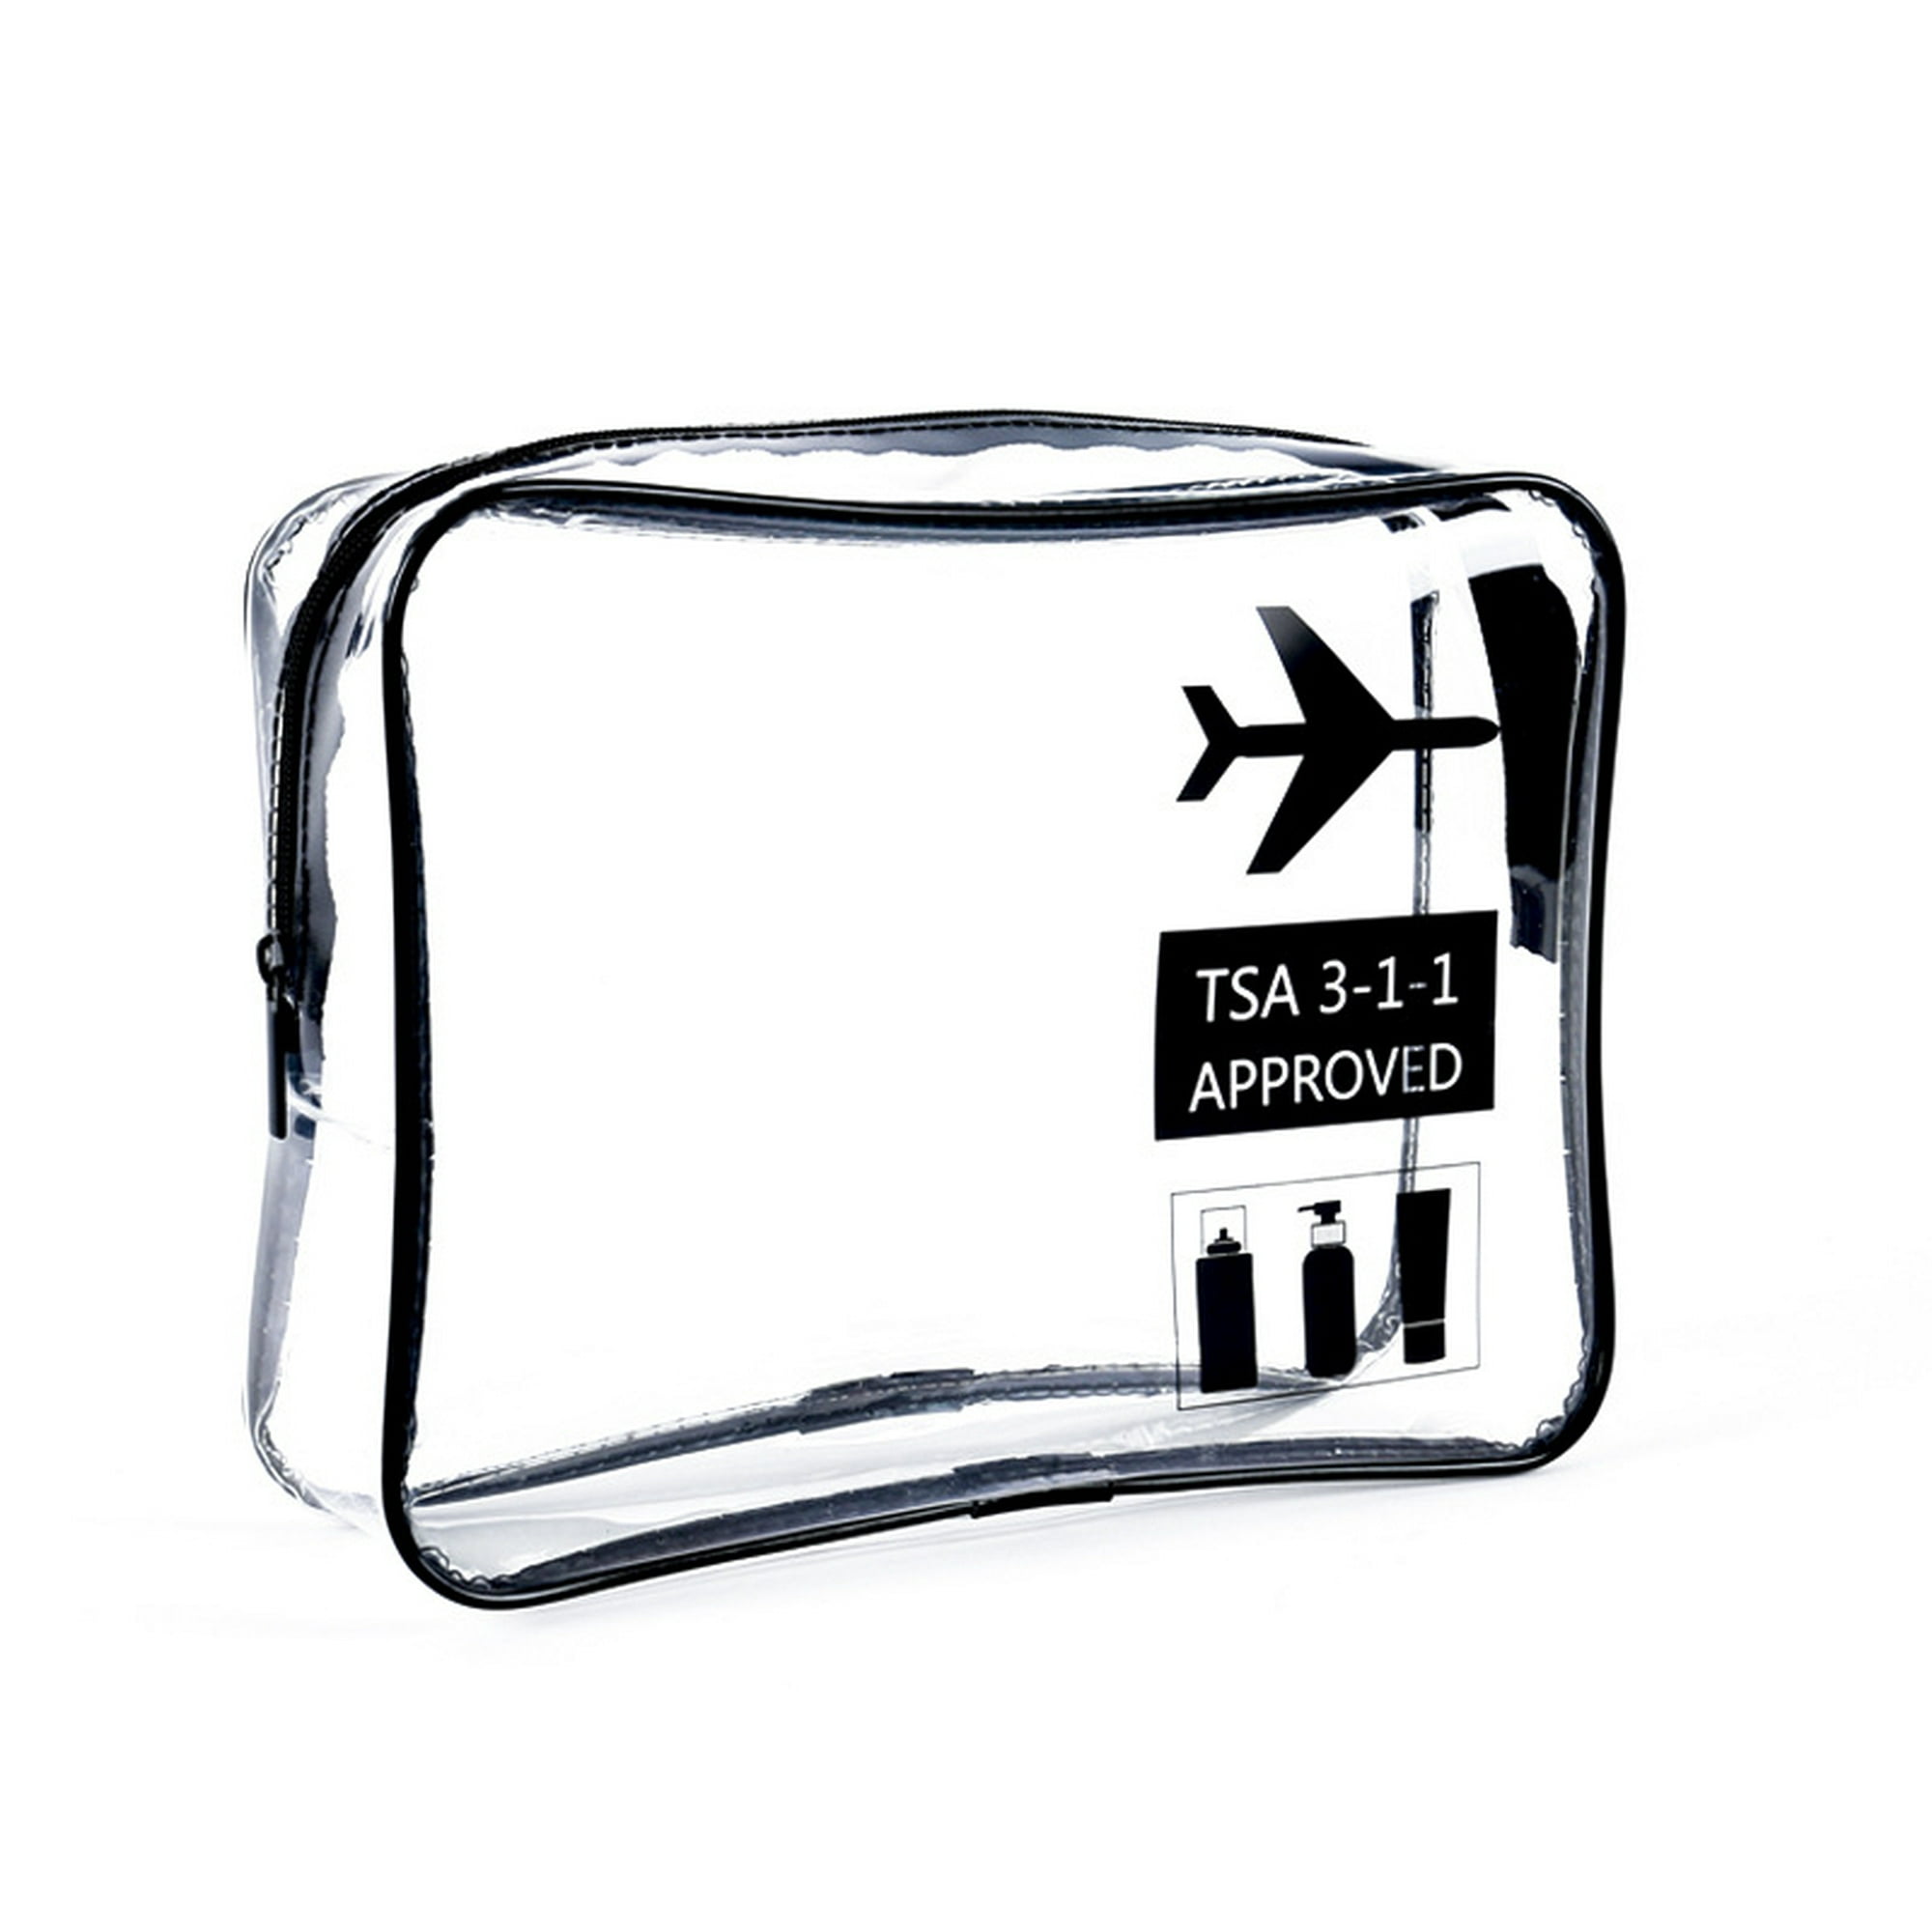 Neceser transparente - 2 bolsas transparentes de avión - Neceser de  transporte de líquidos - Neceser unisex transparente, negro JFHHH pequeña